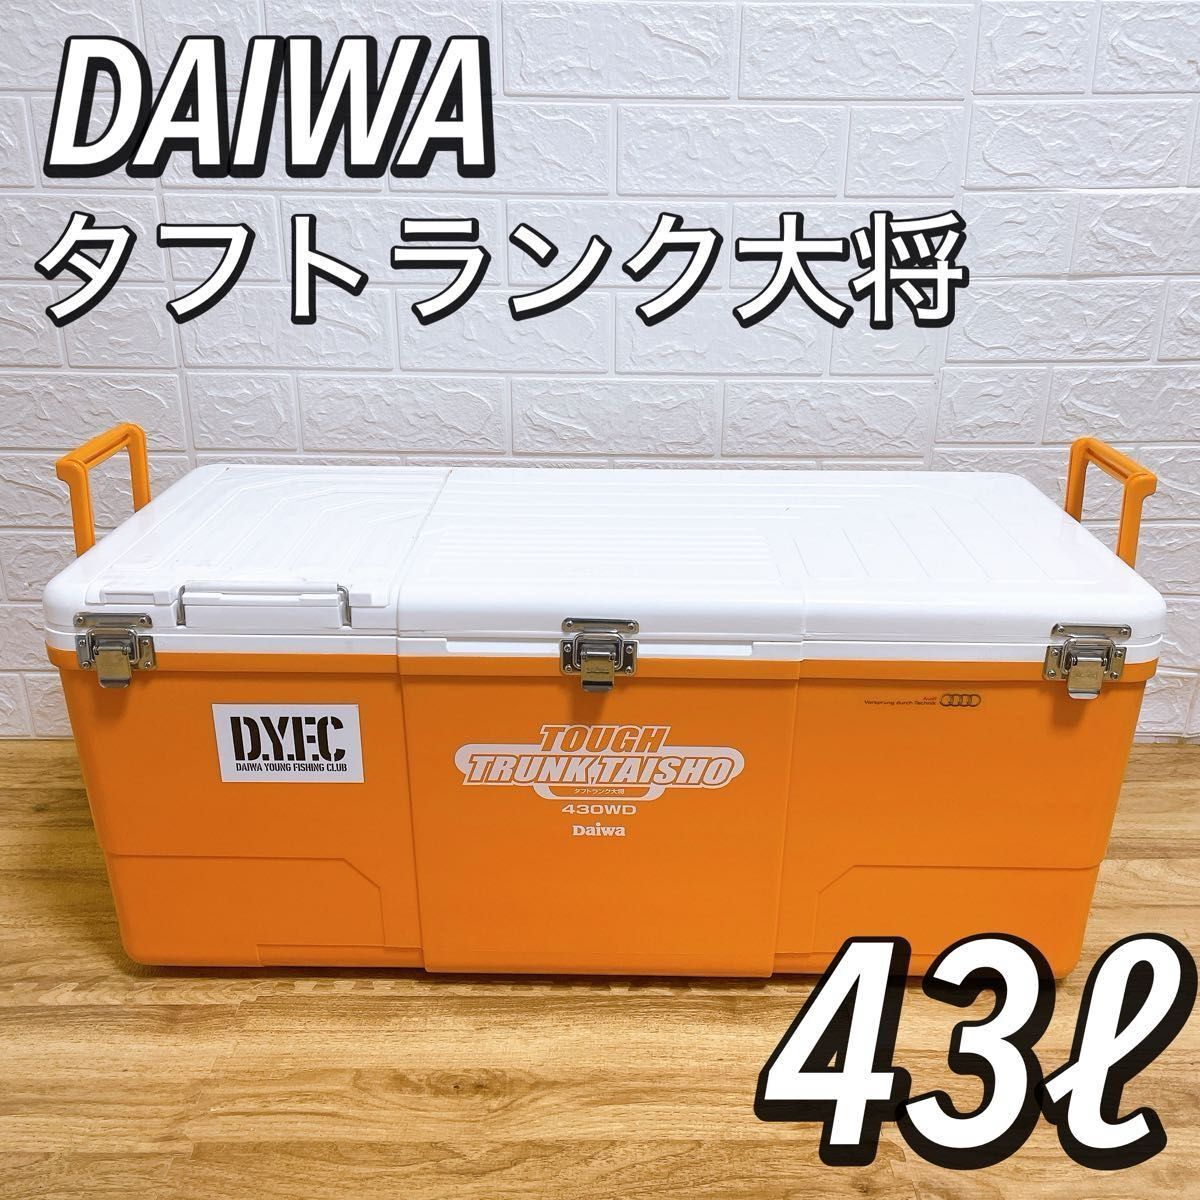 【良品】ダイワ DAIWA トランク大将 クーラーボックス 430WD 希少カラー オレンジ 釣り 43L タフトランク大将の画像1